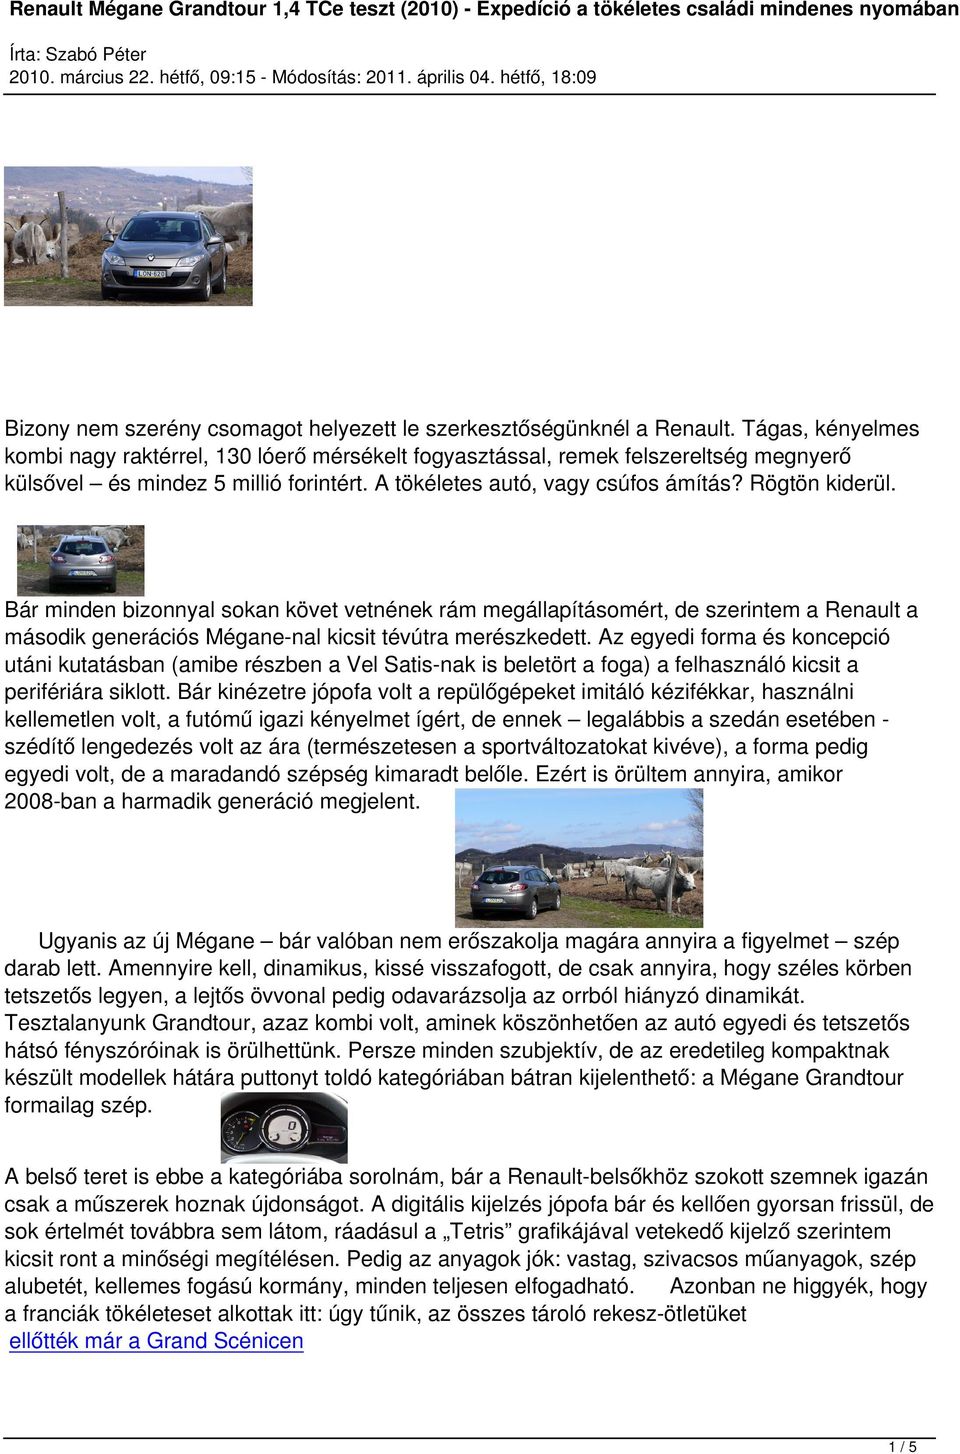 Renault Mégane Grandtour 1,4 TCe teszt (2010) - Expedíció a tökéletes  családi mindenes nyomában - PDF Ingyenes letöltés